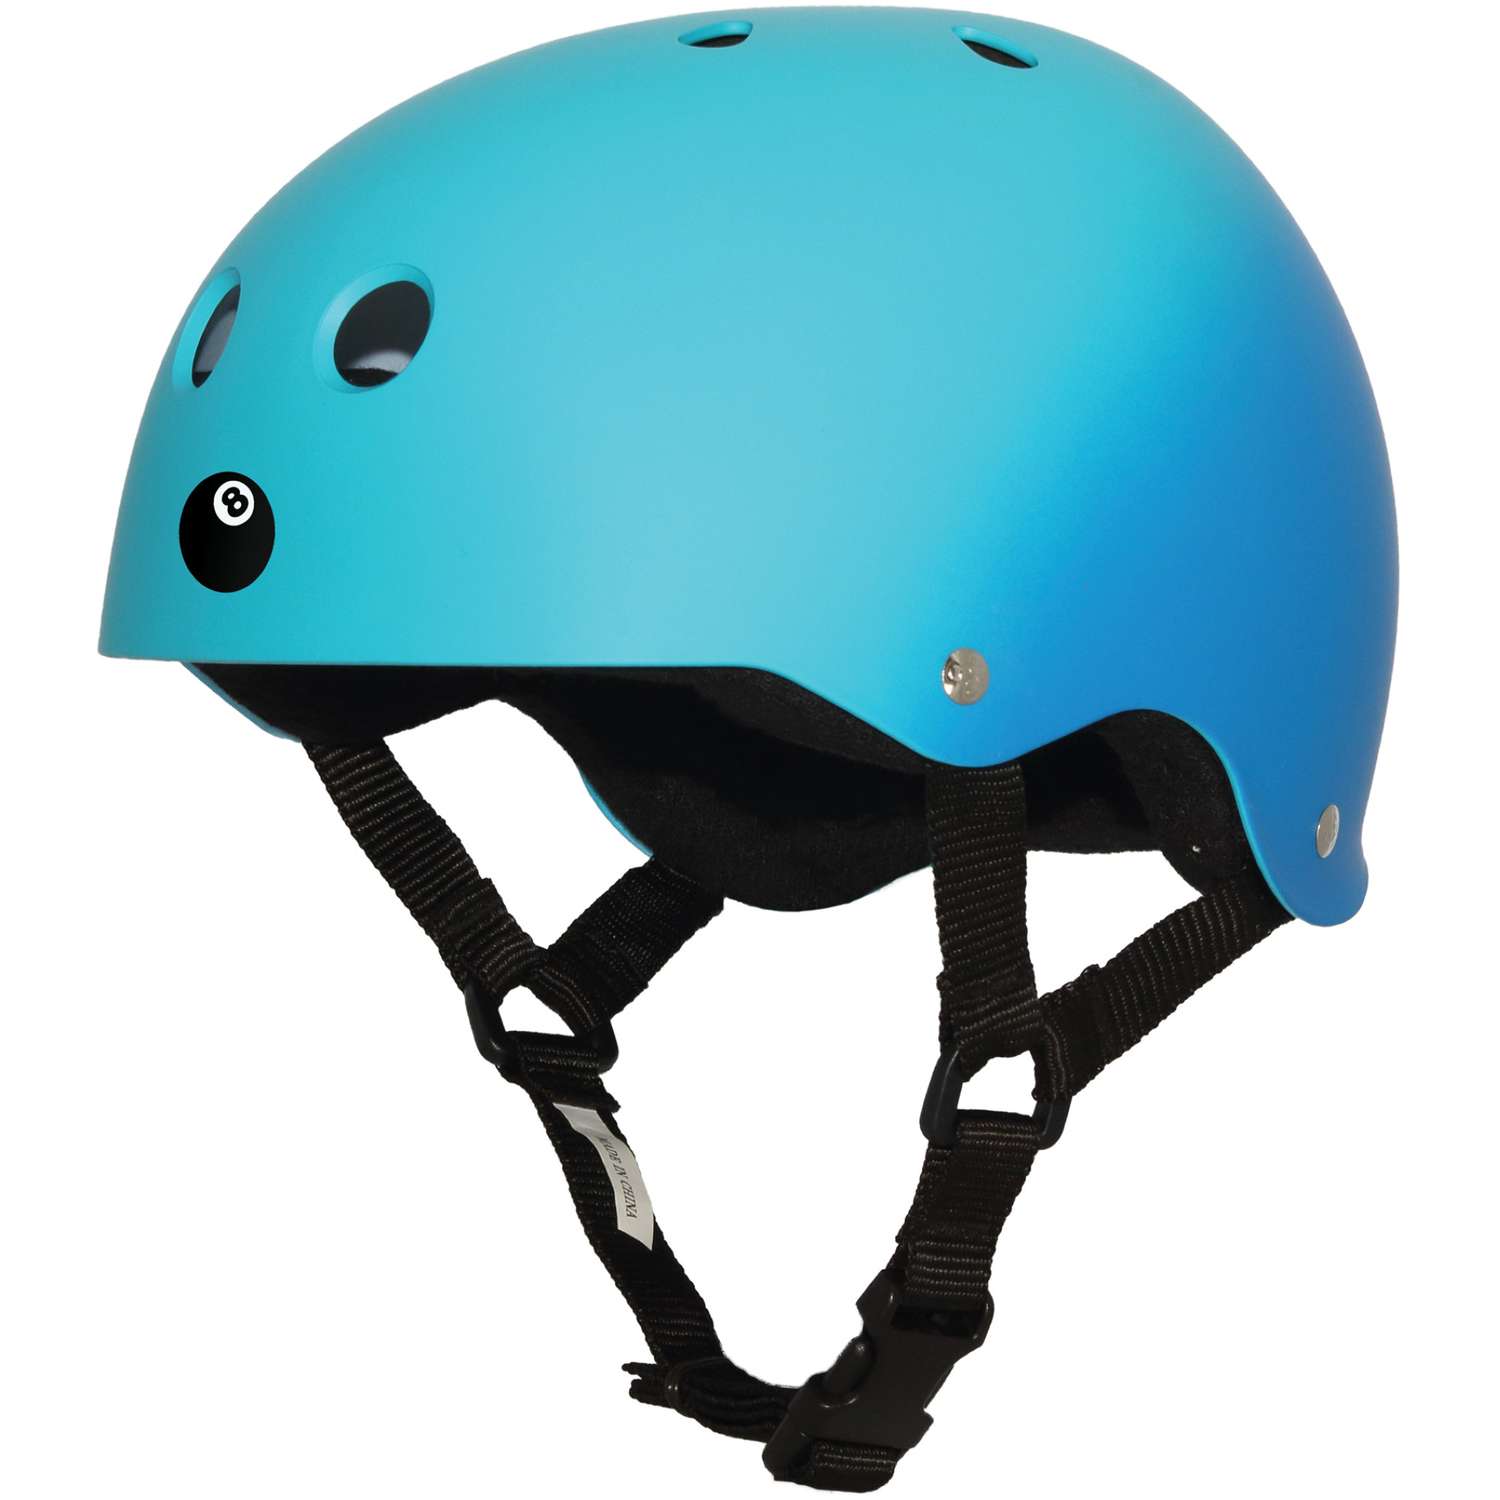 Шлем защитный спортивный Eight Ball Blue (синий) / размер L / возраст 8+ / обхват головы 52-56 см. / для детей - фото 1